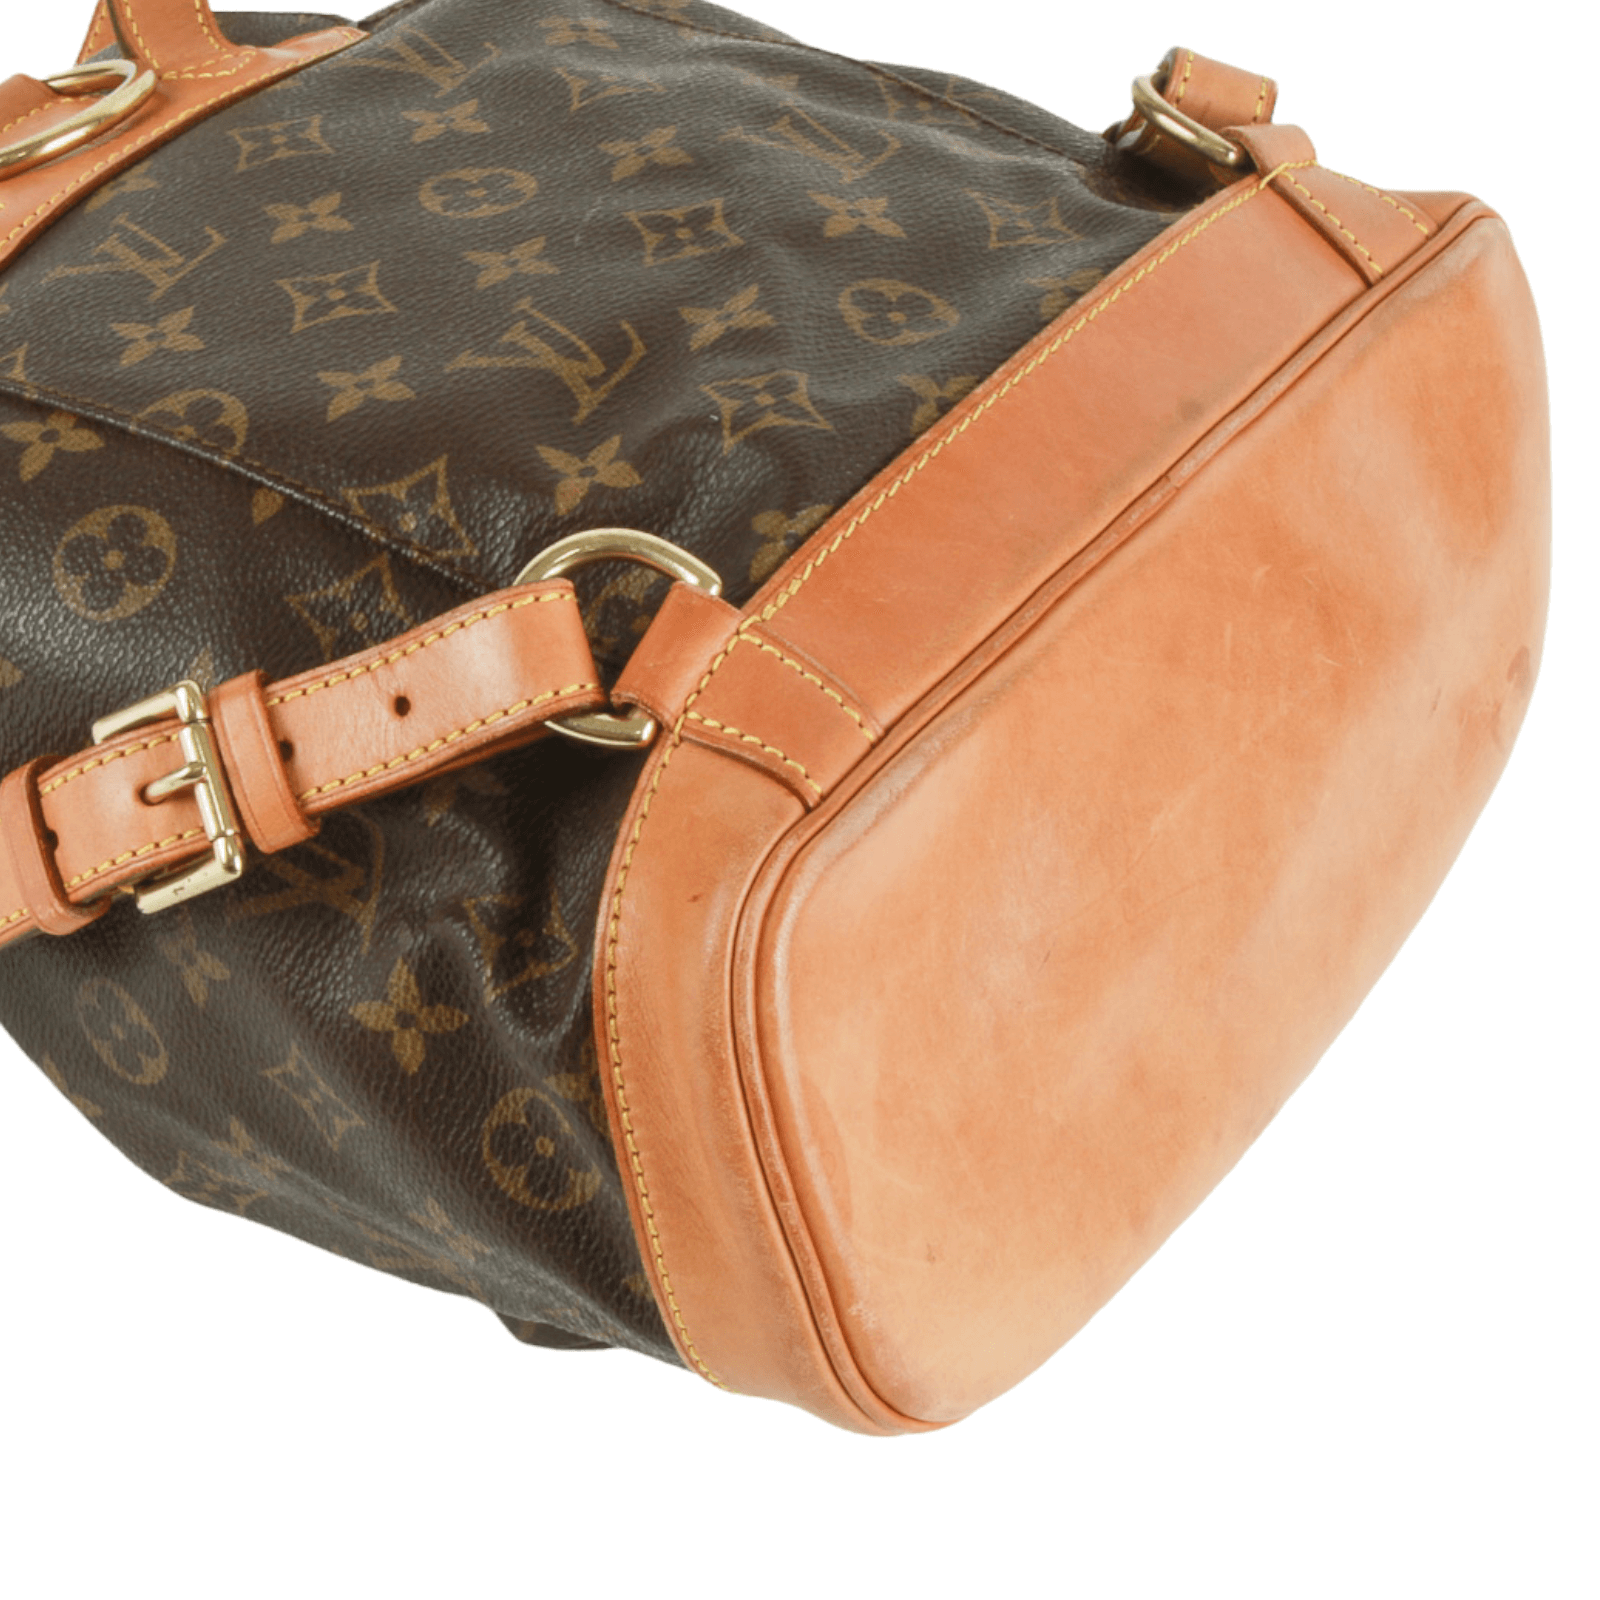 authentic louis vuitton handbags